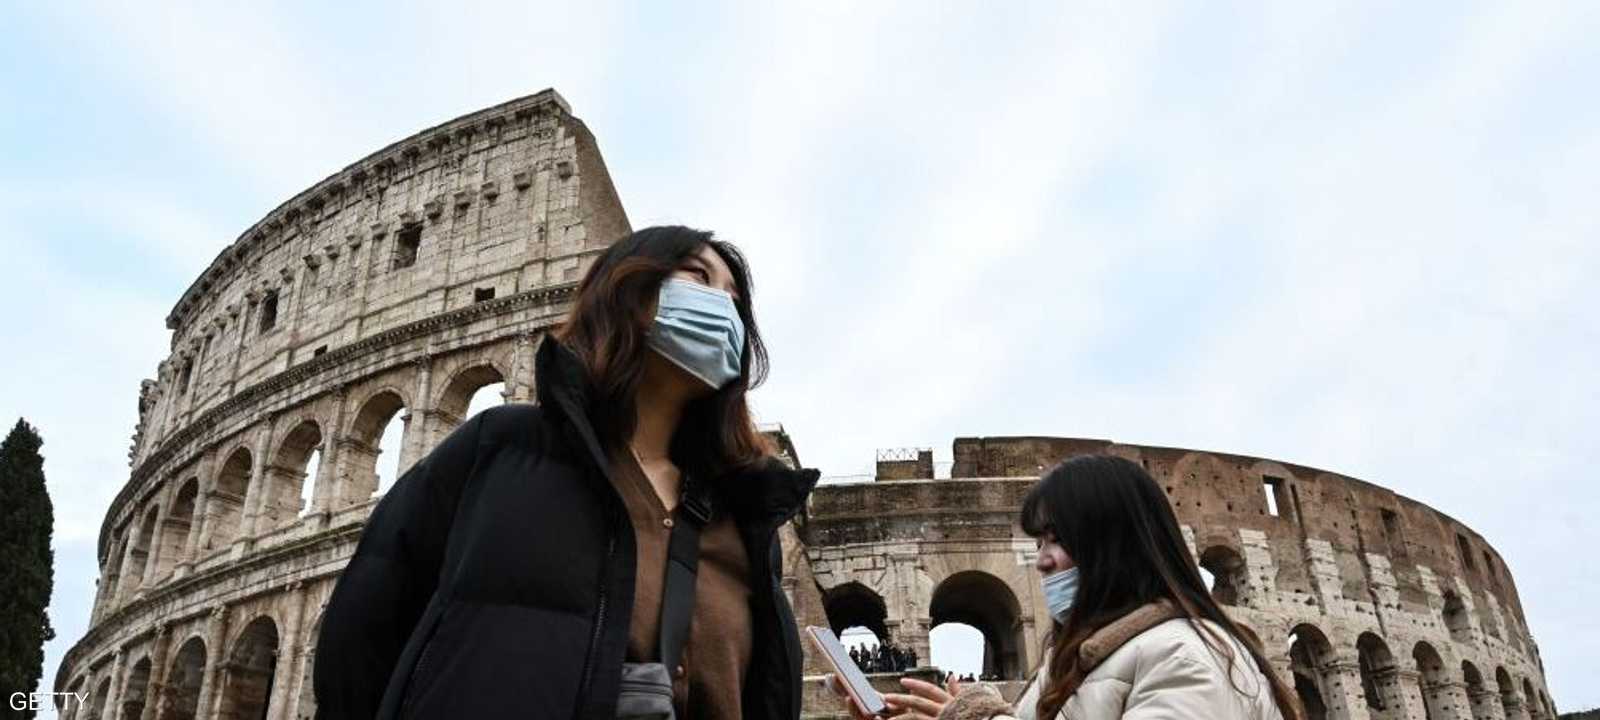 تراجع تعداد السياح الأجانب في إيطاليا بشكل كبير